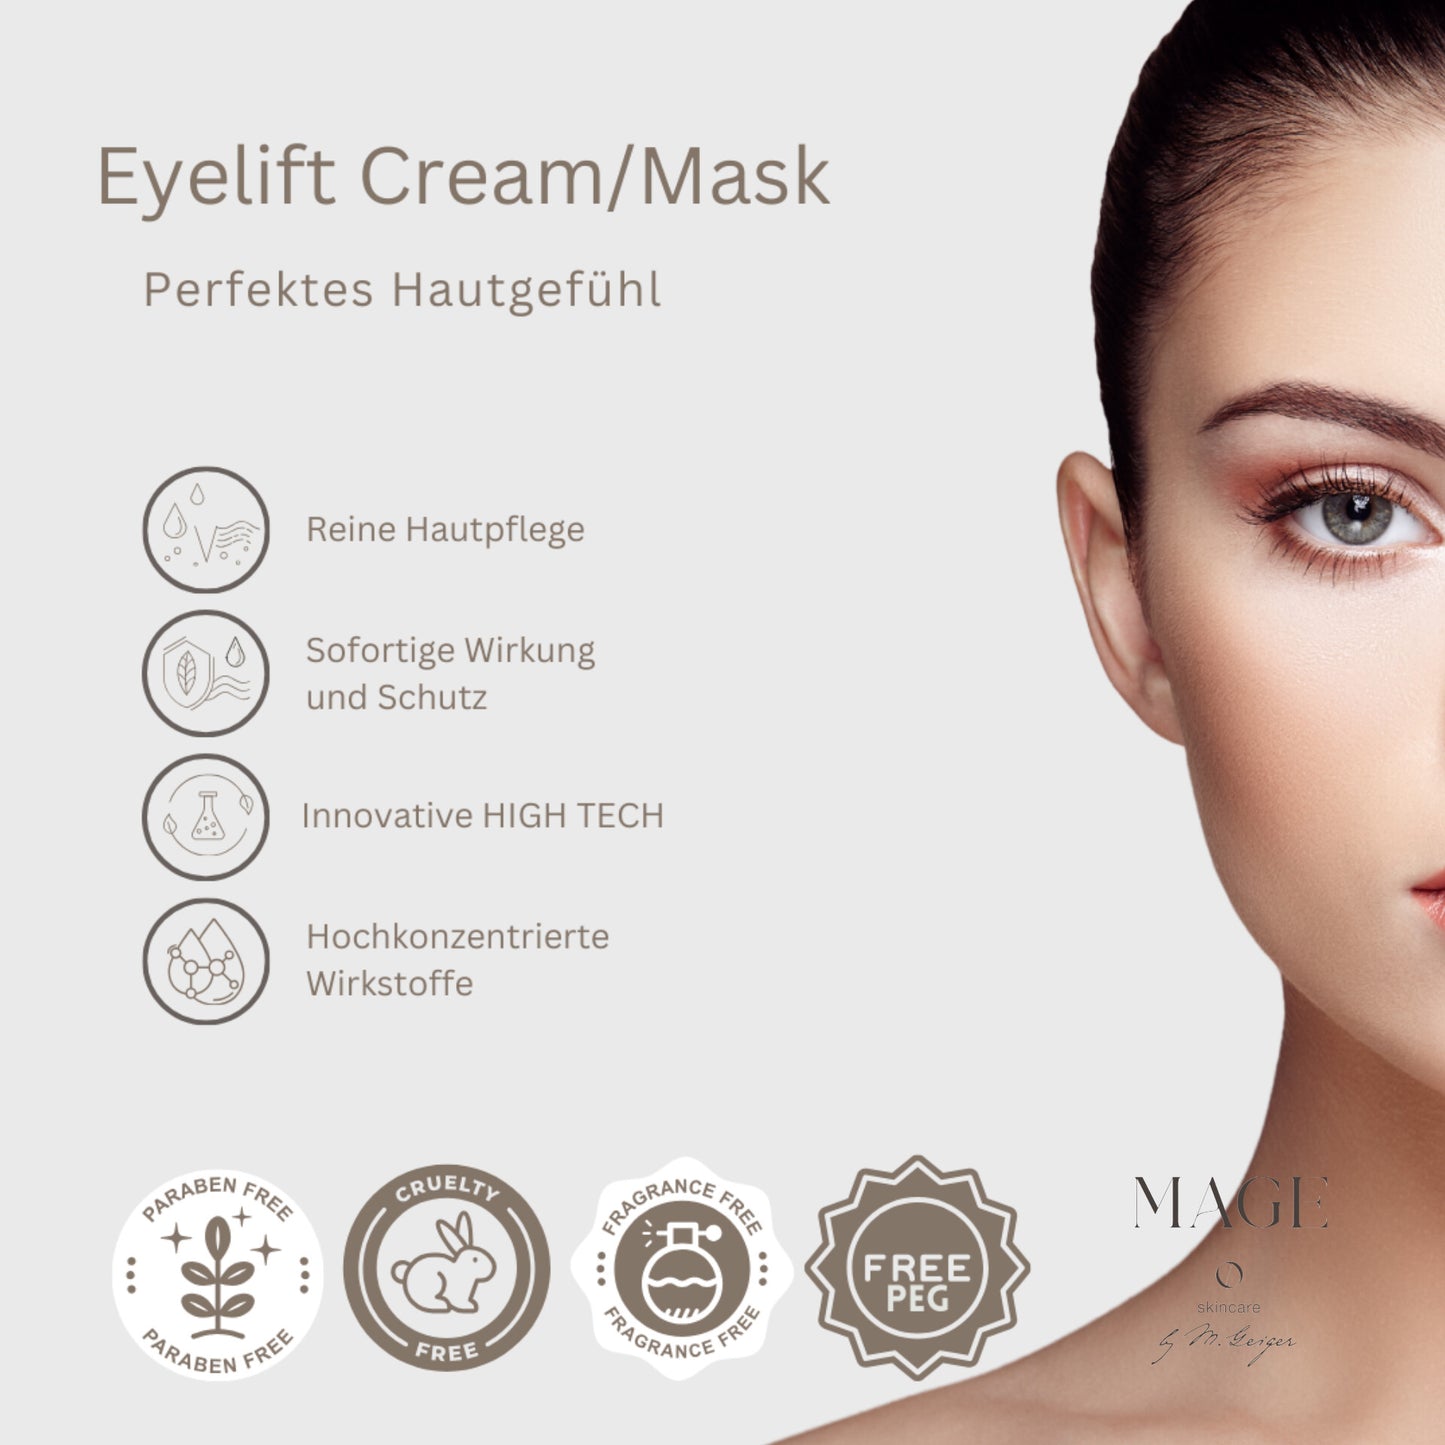 Eyelift Cream & Mask Straffung und weniger Falten für sensible Augenpartie mit Botox und Hyaluron